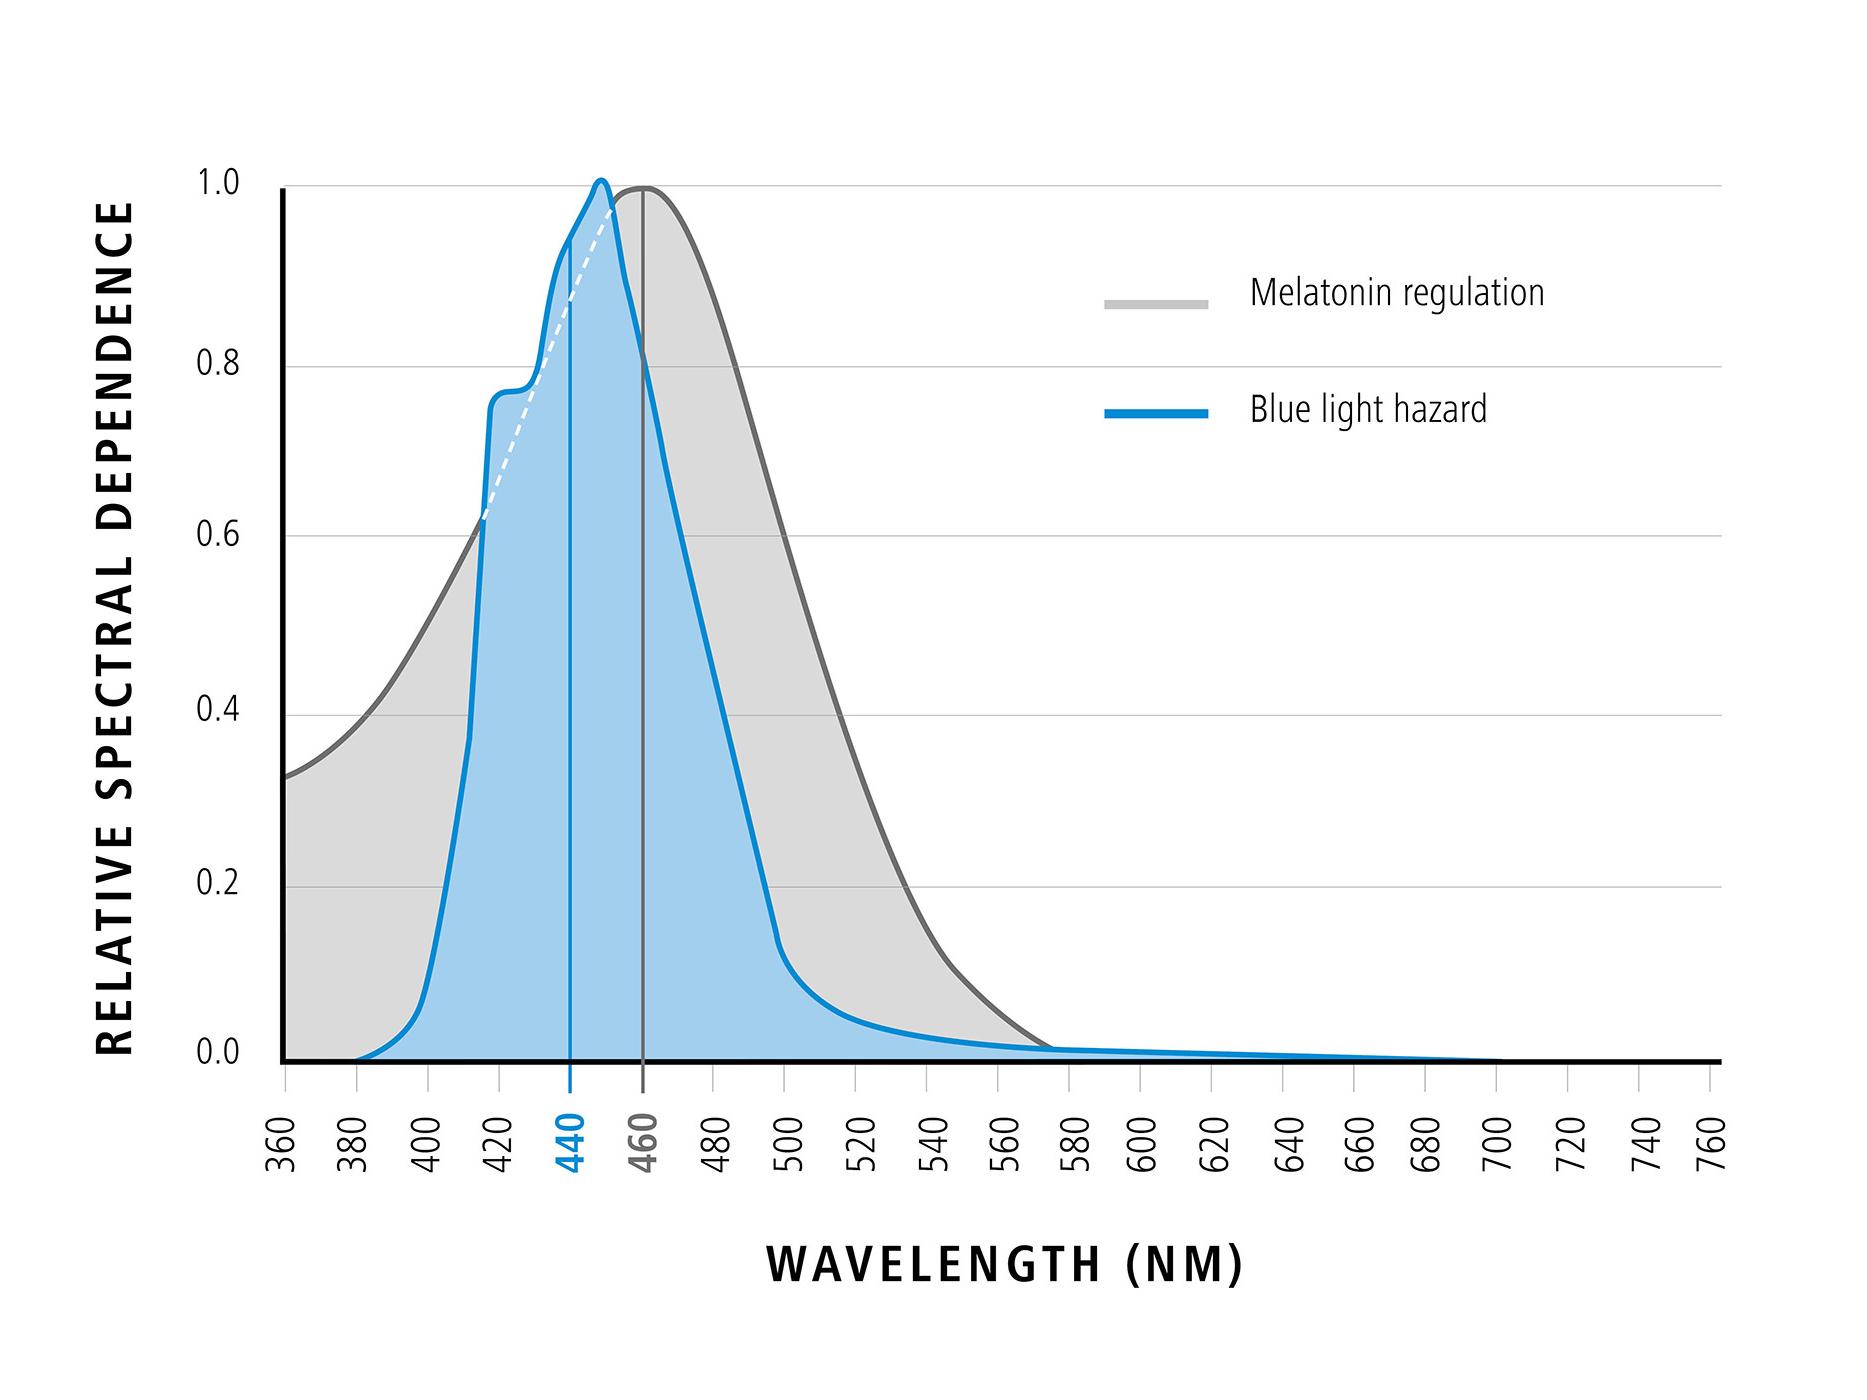 Graf znázorňujúci vlnovú dĺžku modrého svetla vo vzťahu k relatívnej spektrálnej závislosti (pozitívne účinky modrého svetla) 